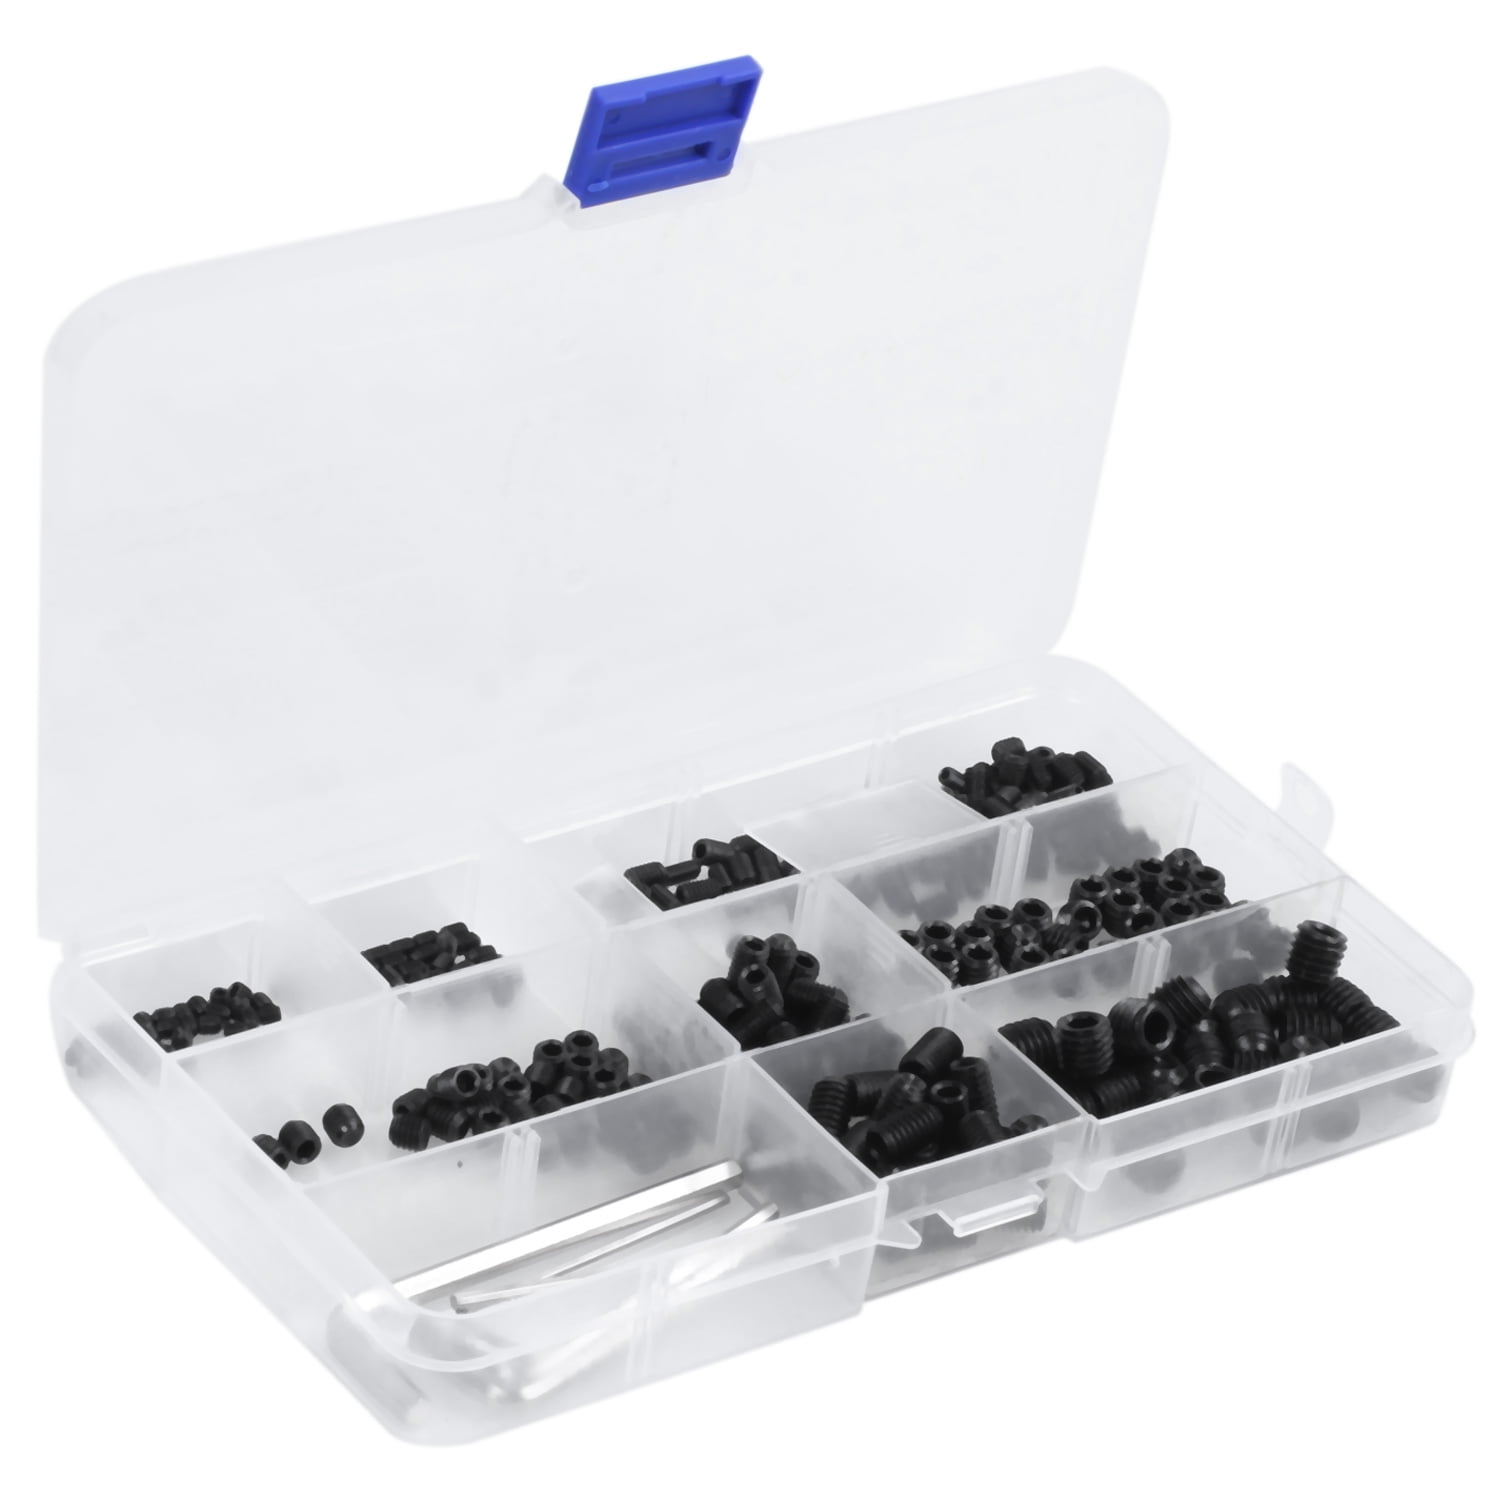 Beennex 300pcs M3/M4/M5/M6/M8 Hex Socket Grub Set Screws Assortment Kit with Box 